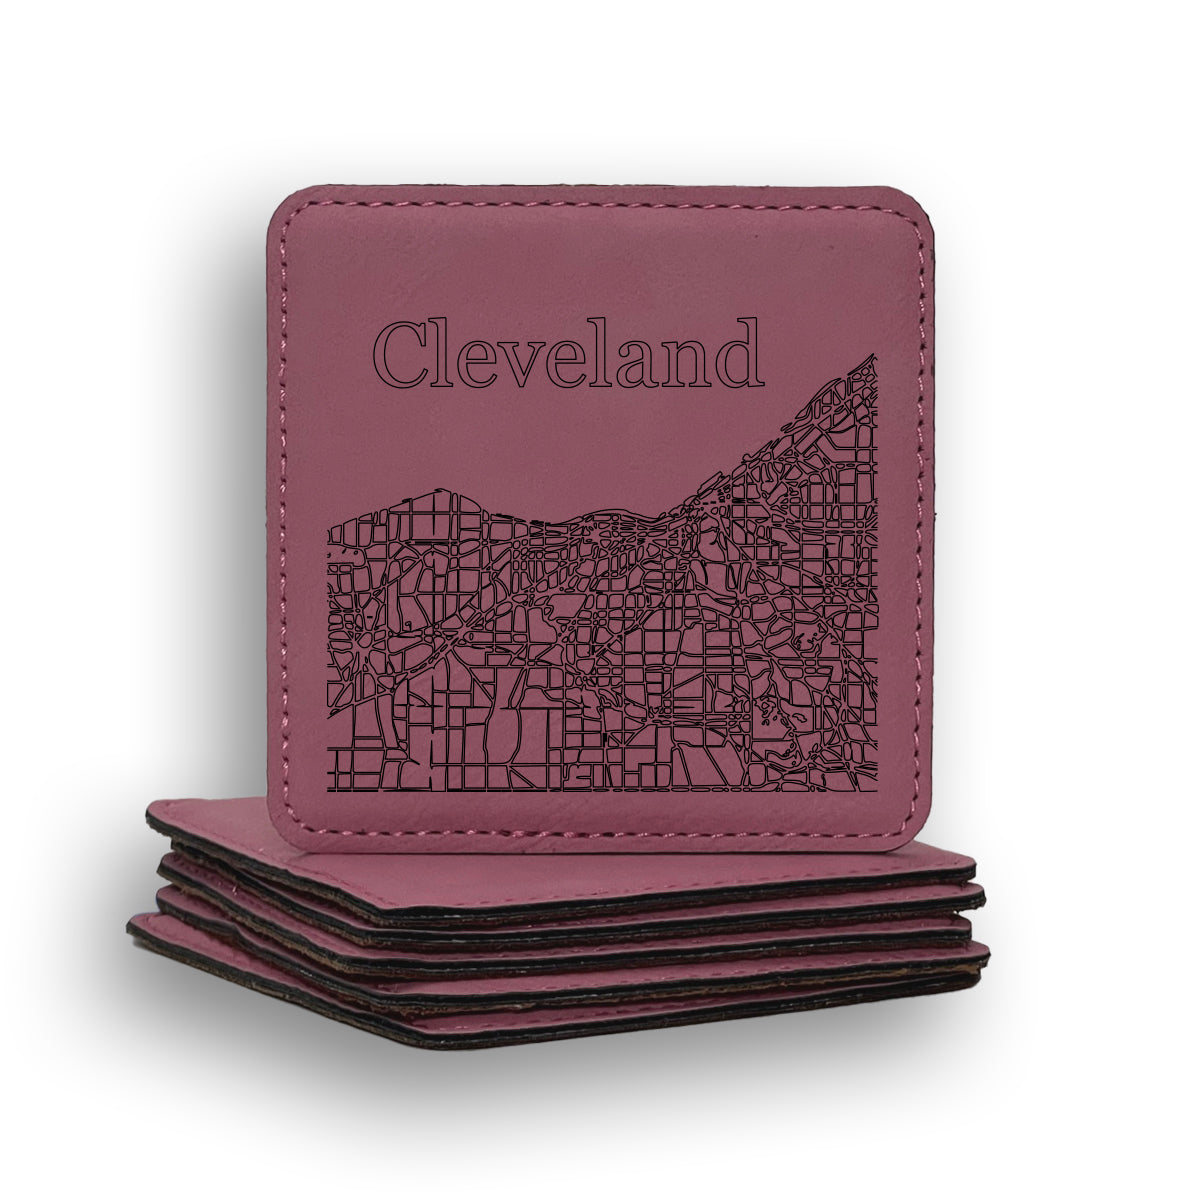 Cleveland Map Coaster